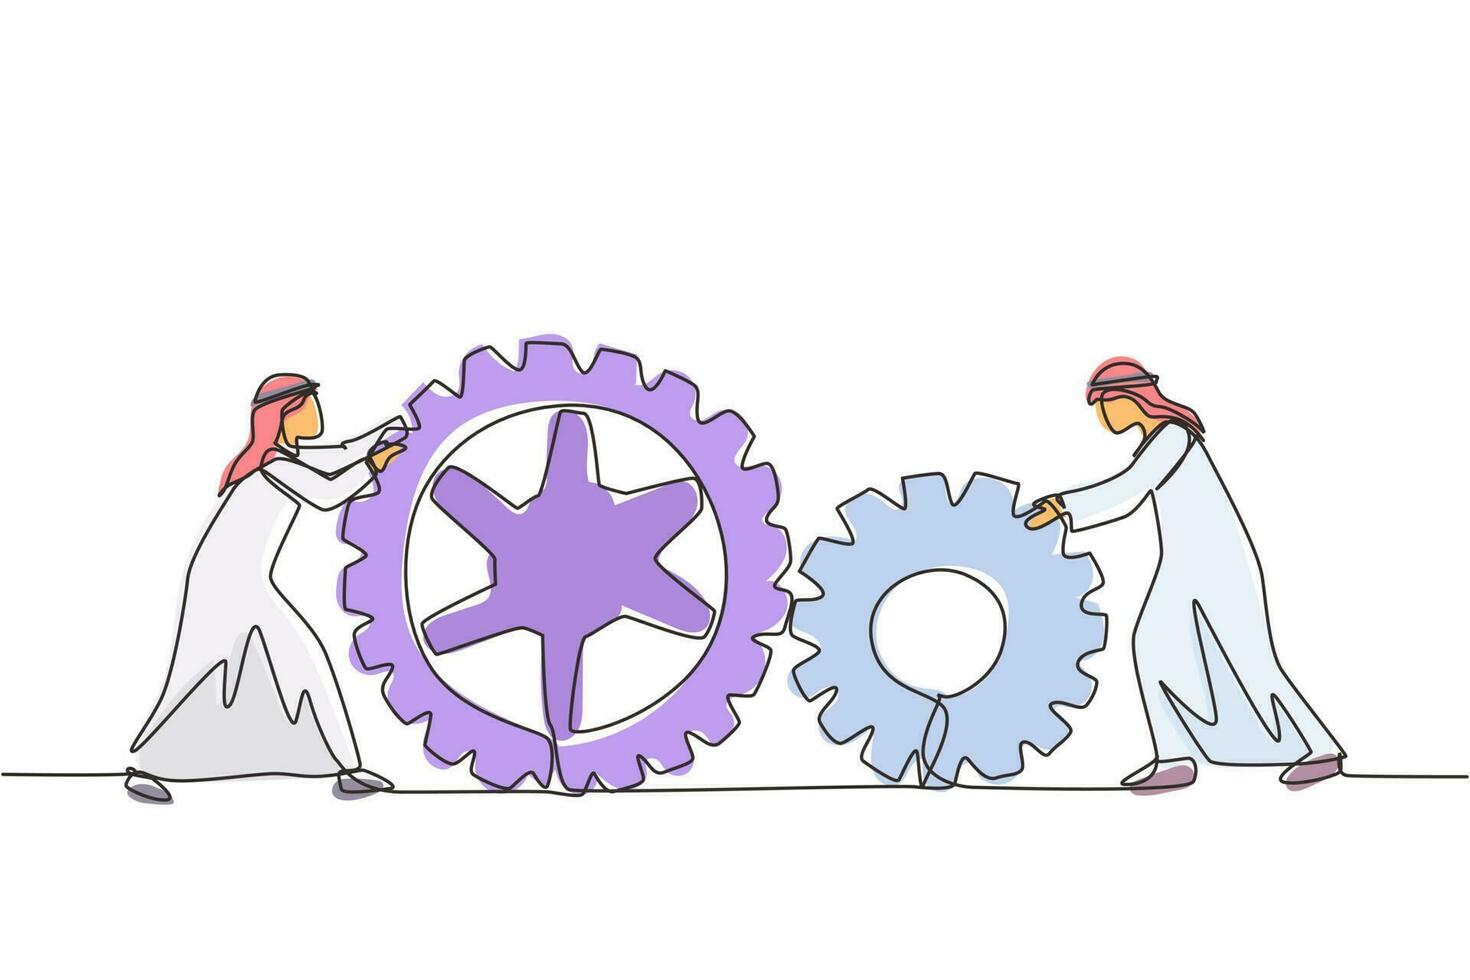 kontinuierliche eine linie, die zwei arabische geschäftsmänner zeichnet, die große zahnräder zusammenschieben. teamwork zusammenarbeit im zahnradmechanismus. männer, die an push-gängen, teamarbeit oder führung arbeiten. einzeiliger Entwurfsvektor vektor